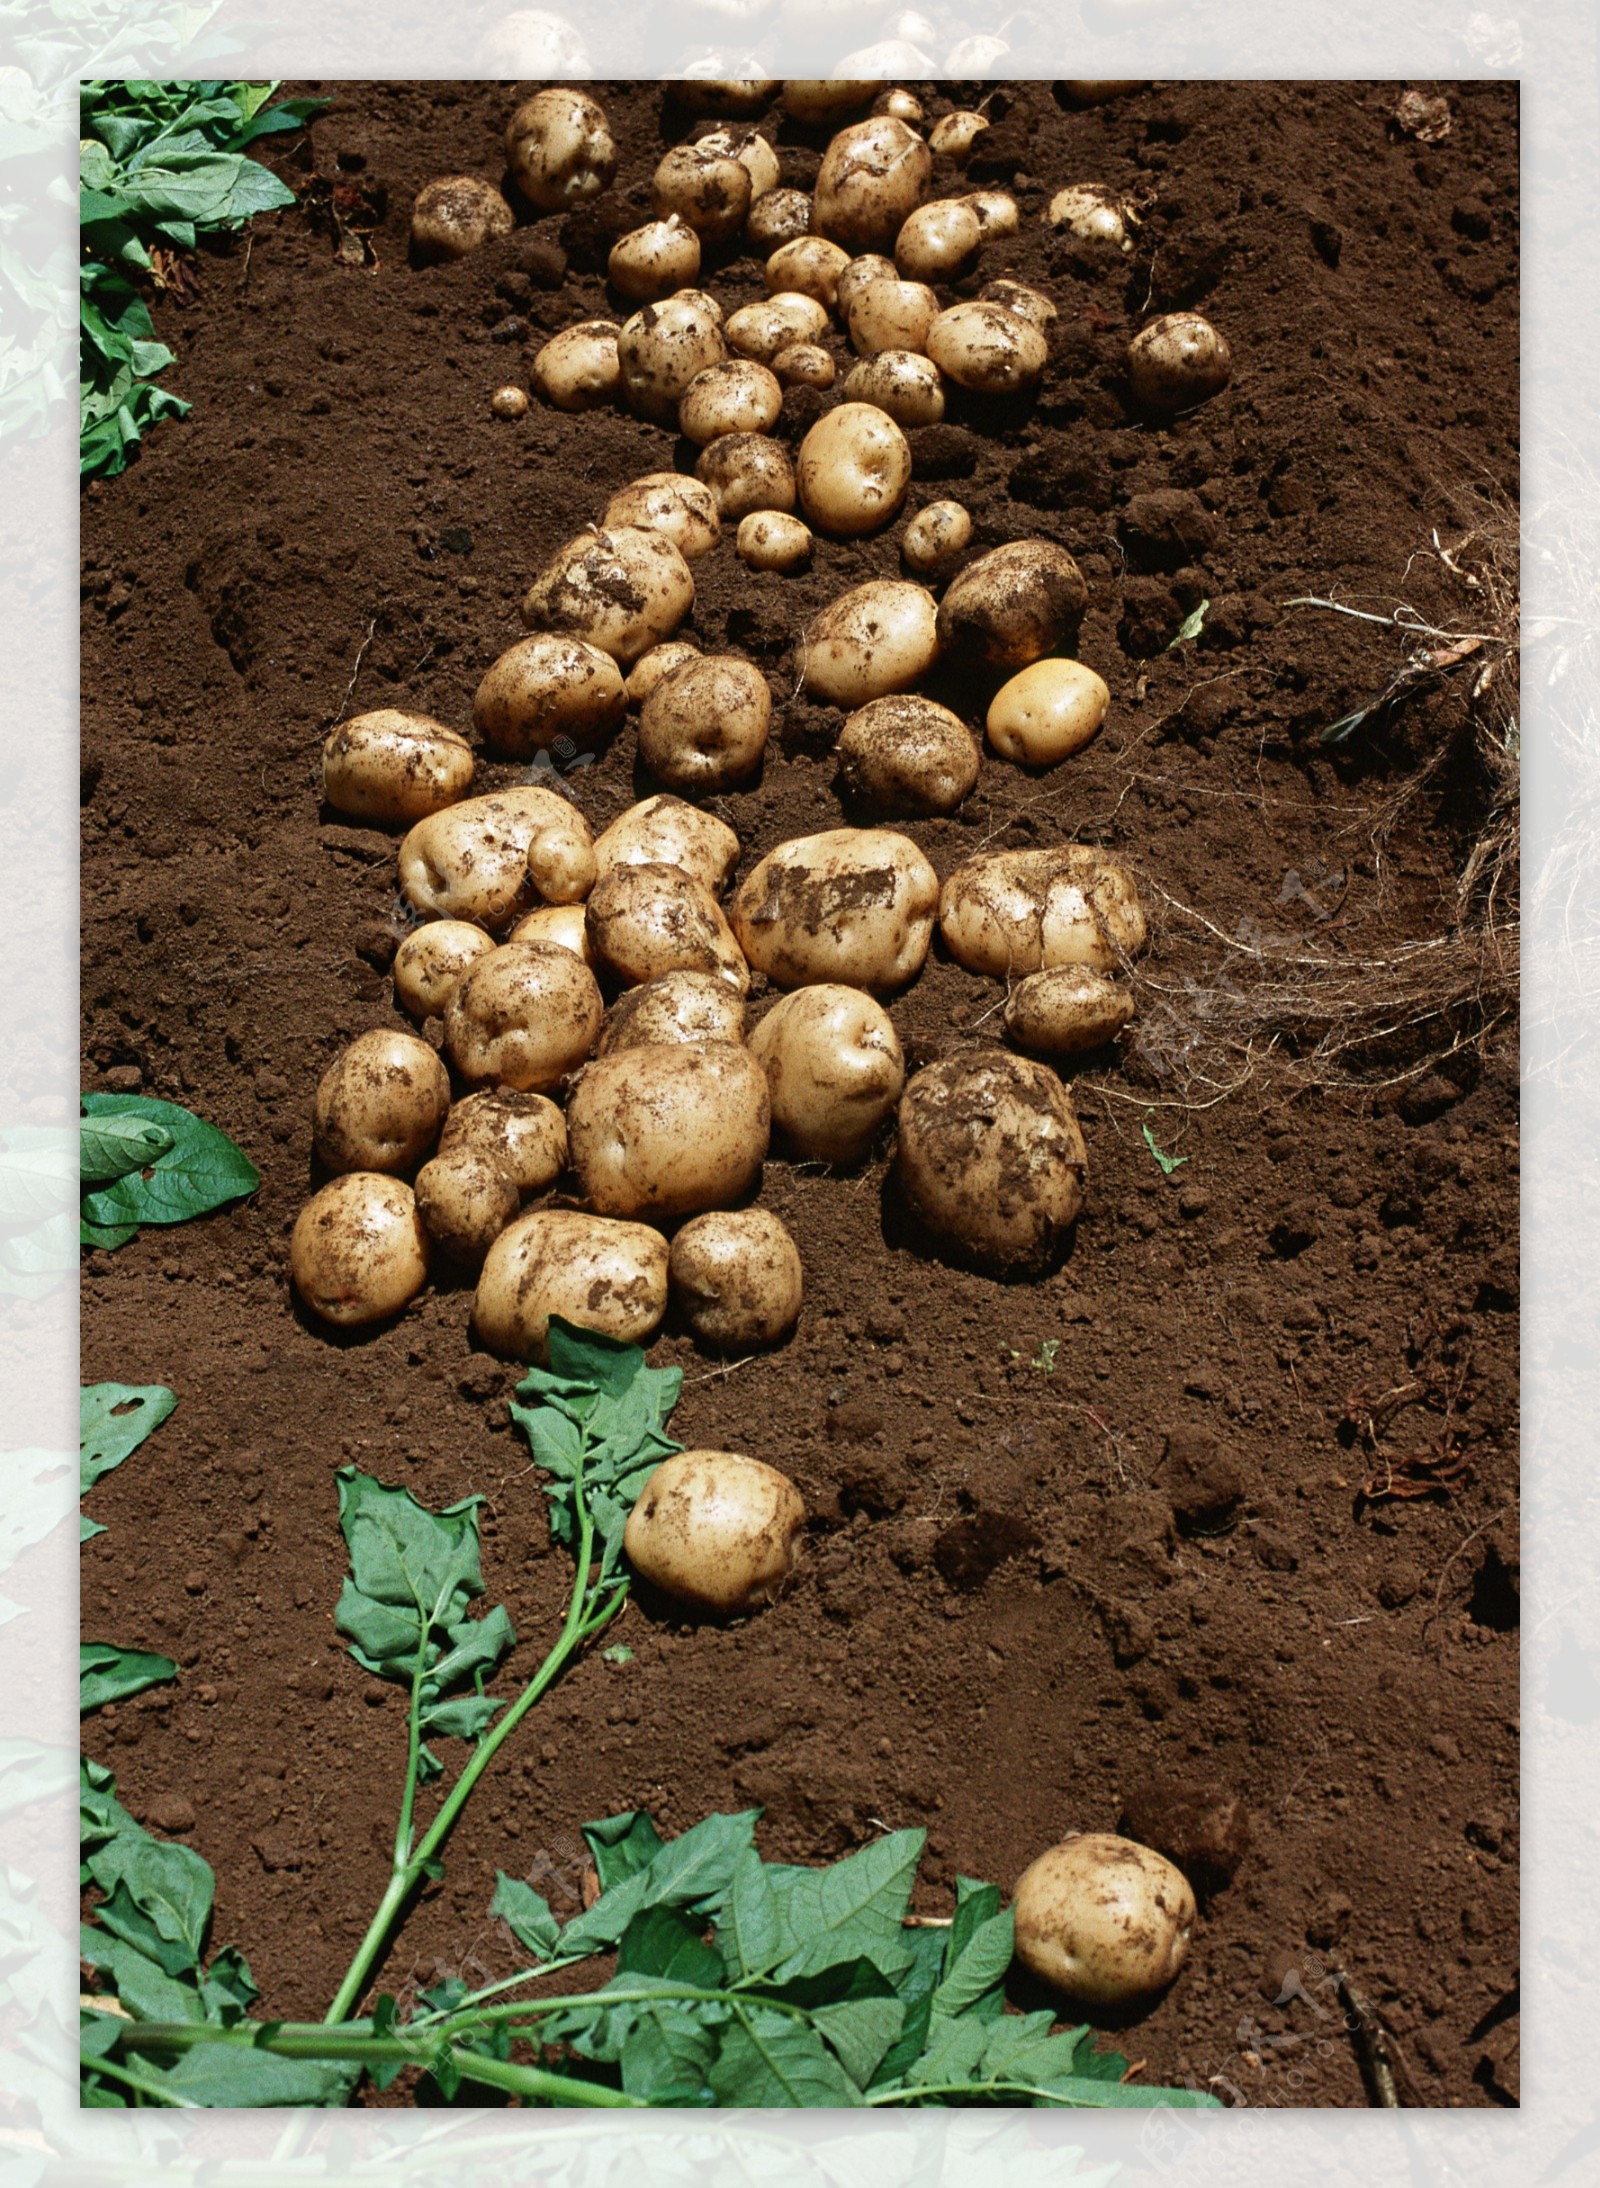 地里的土豆